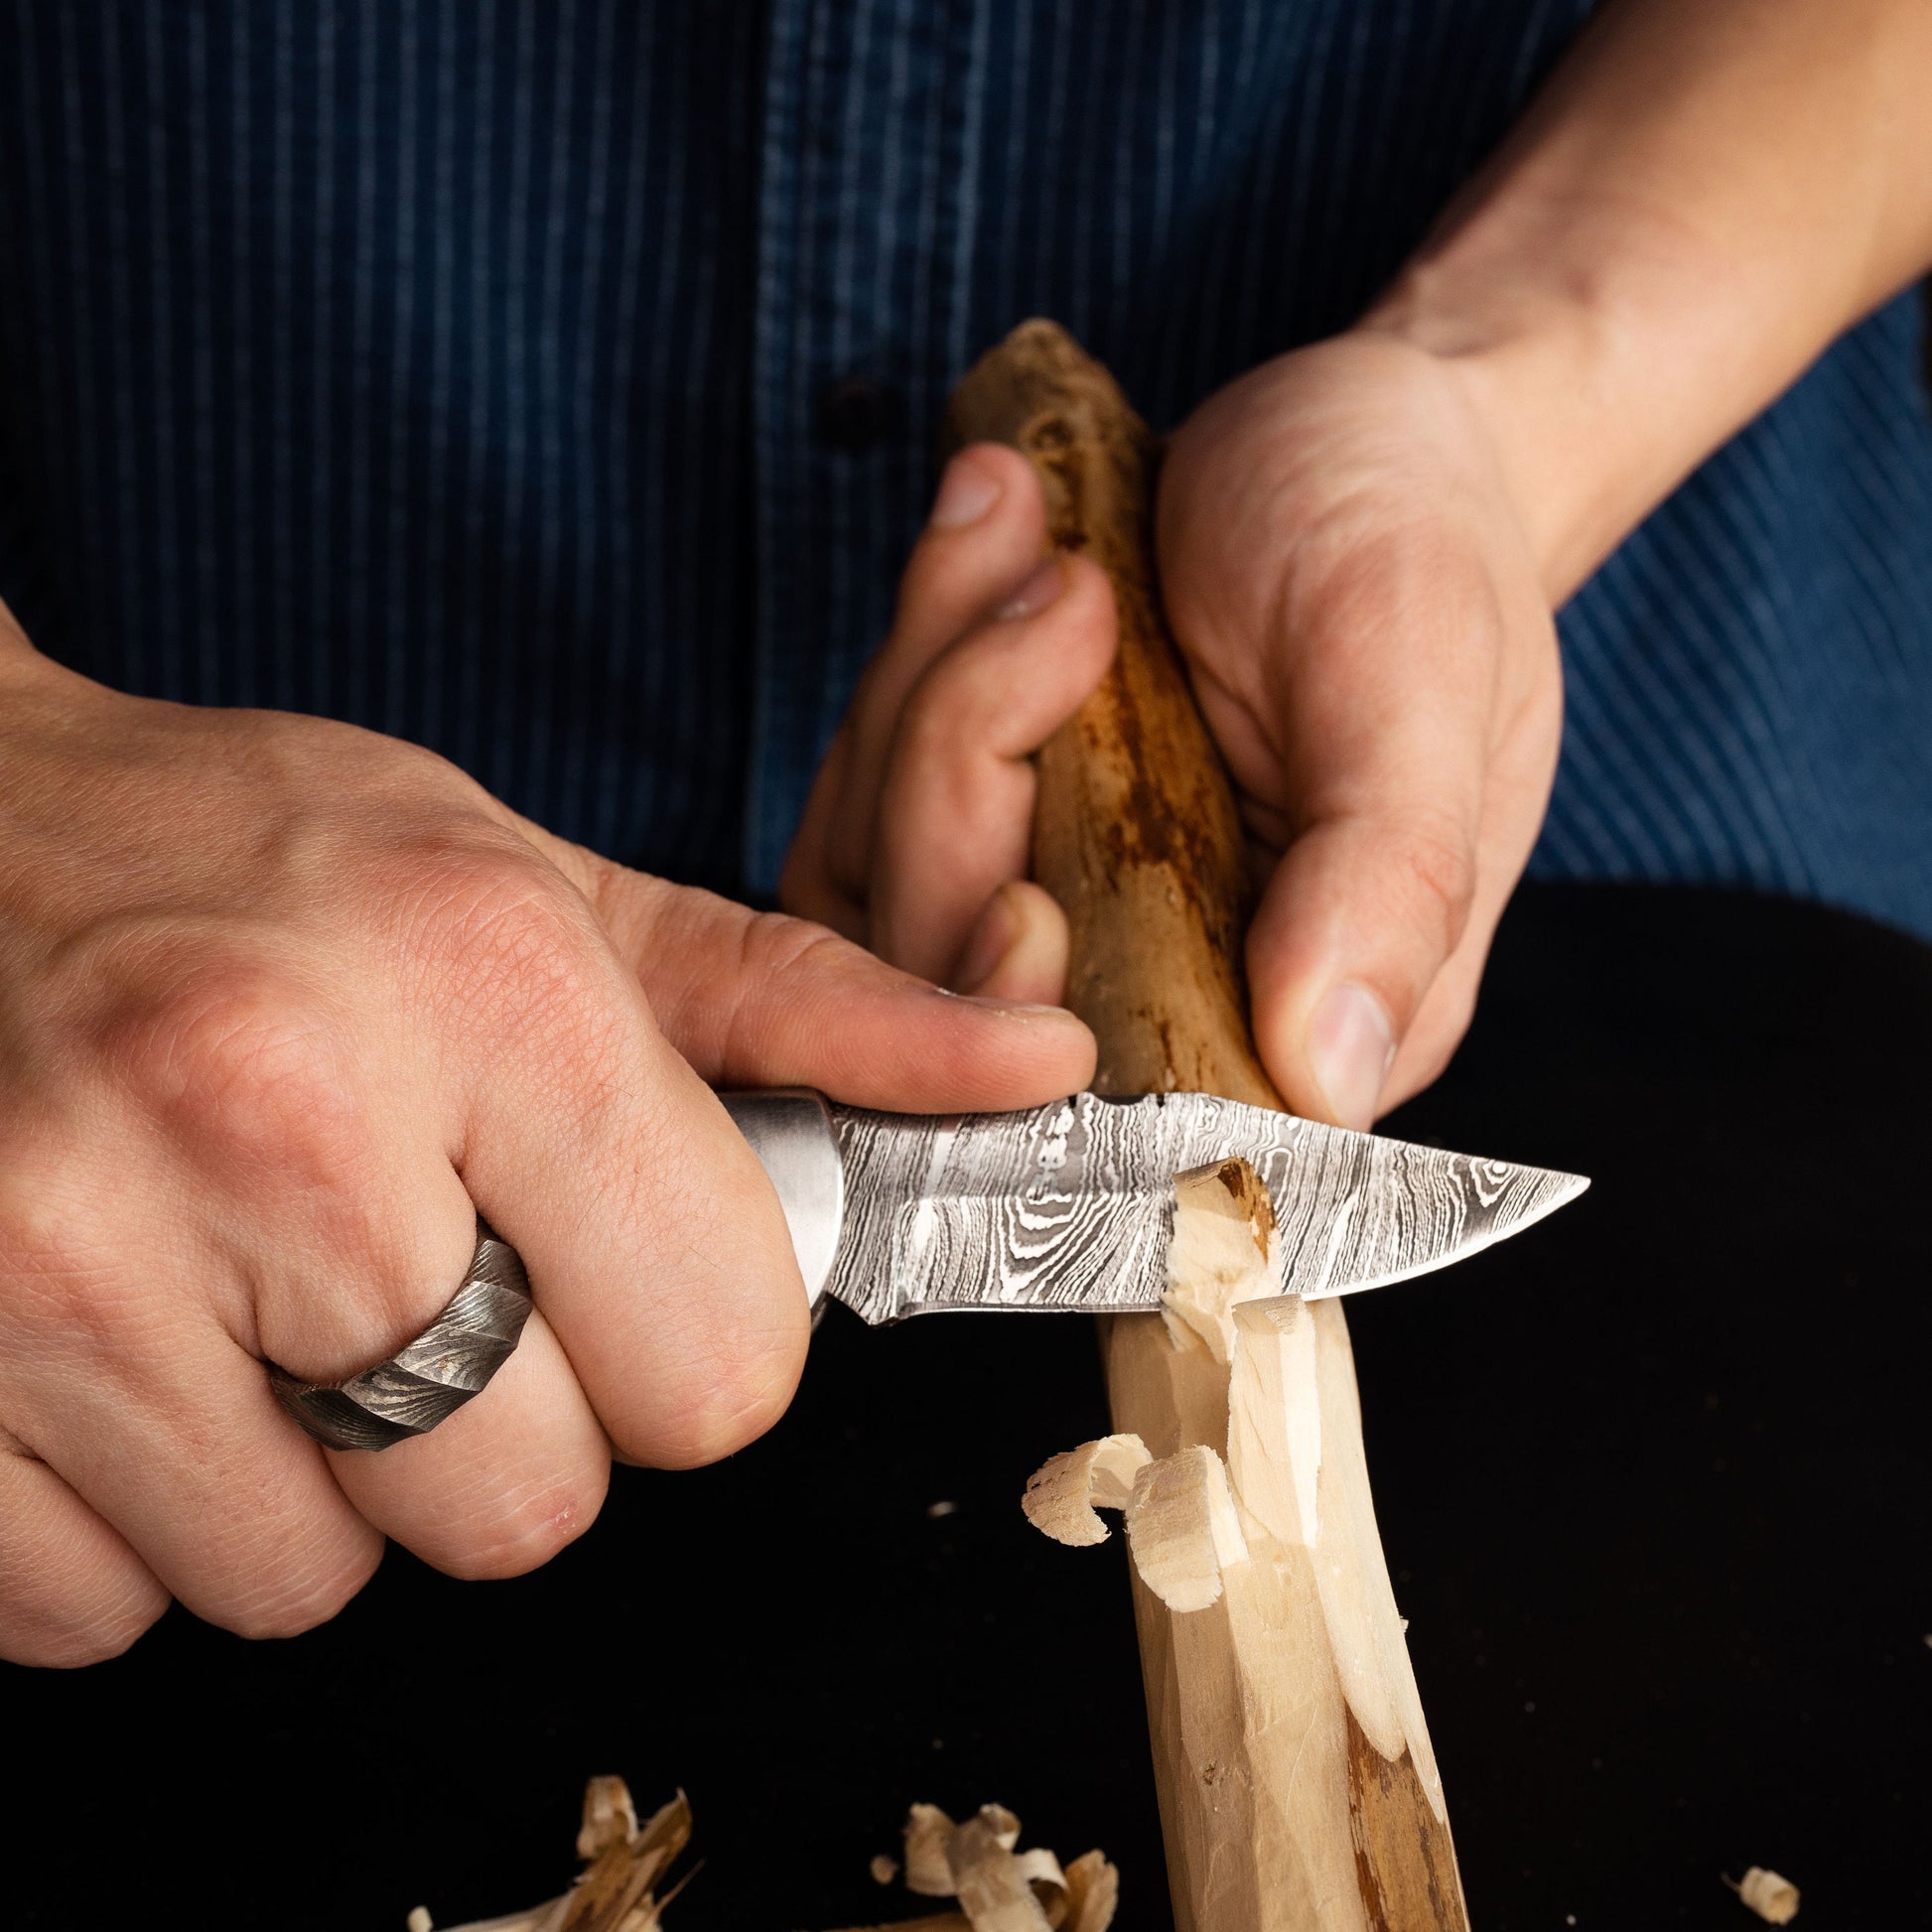 Black Wood Bone Handle Camping Damascus Steel Blade Pocket Knife - Authentic 6.5" Folding Knife Groomsmen Gift for Men Custom Handmade Knife